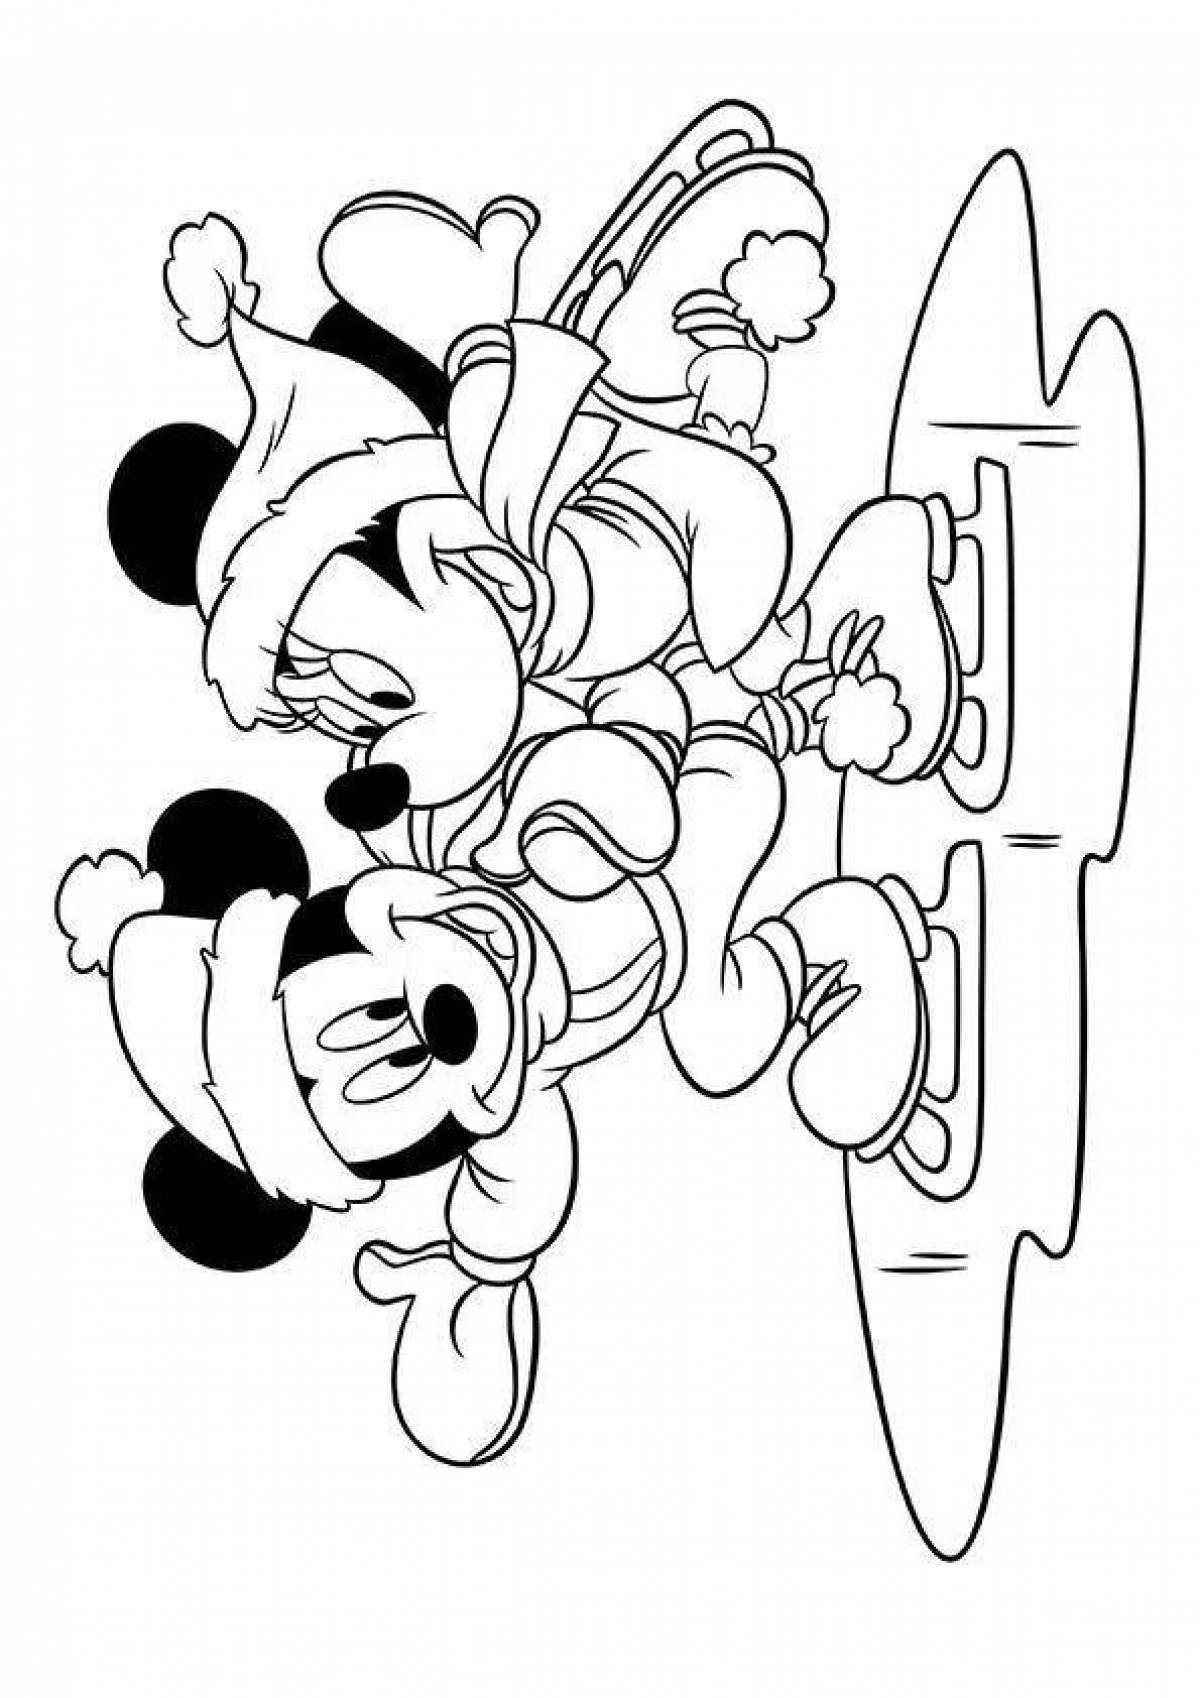 Микки раскраски распечатать. Микки Маус раскраска. Разукрашки Микки Маус. Микки и мини Маусы разукрашка. Микки и Минни Маус раскраска.